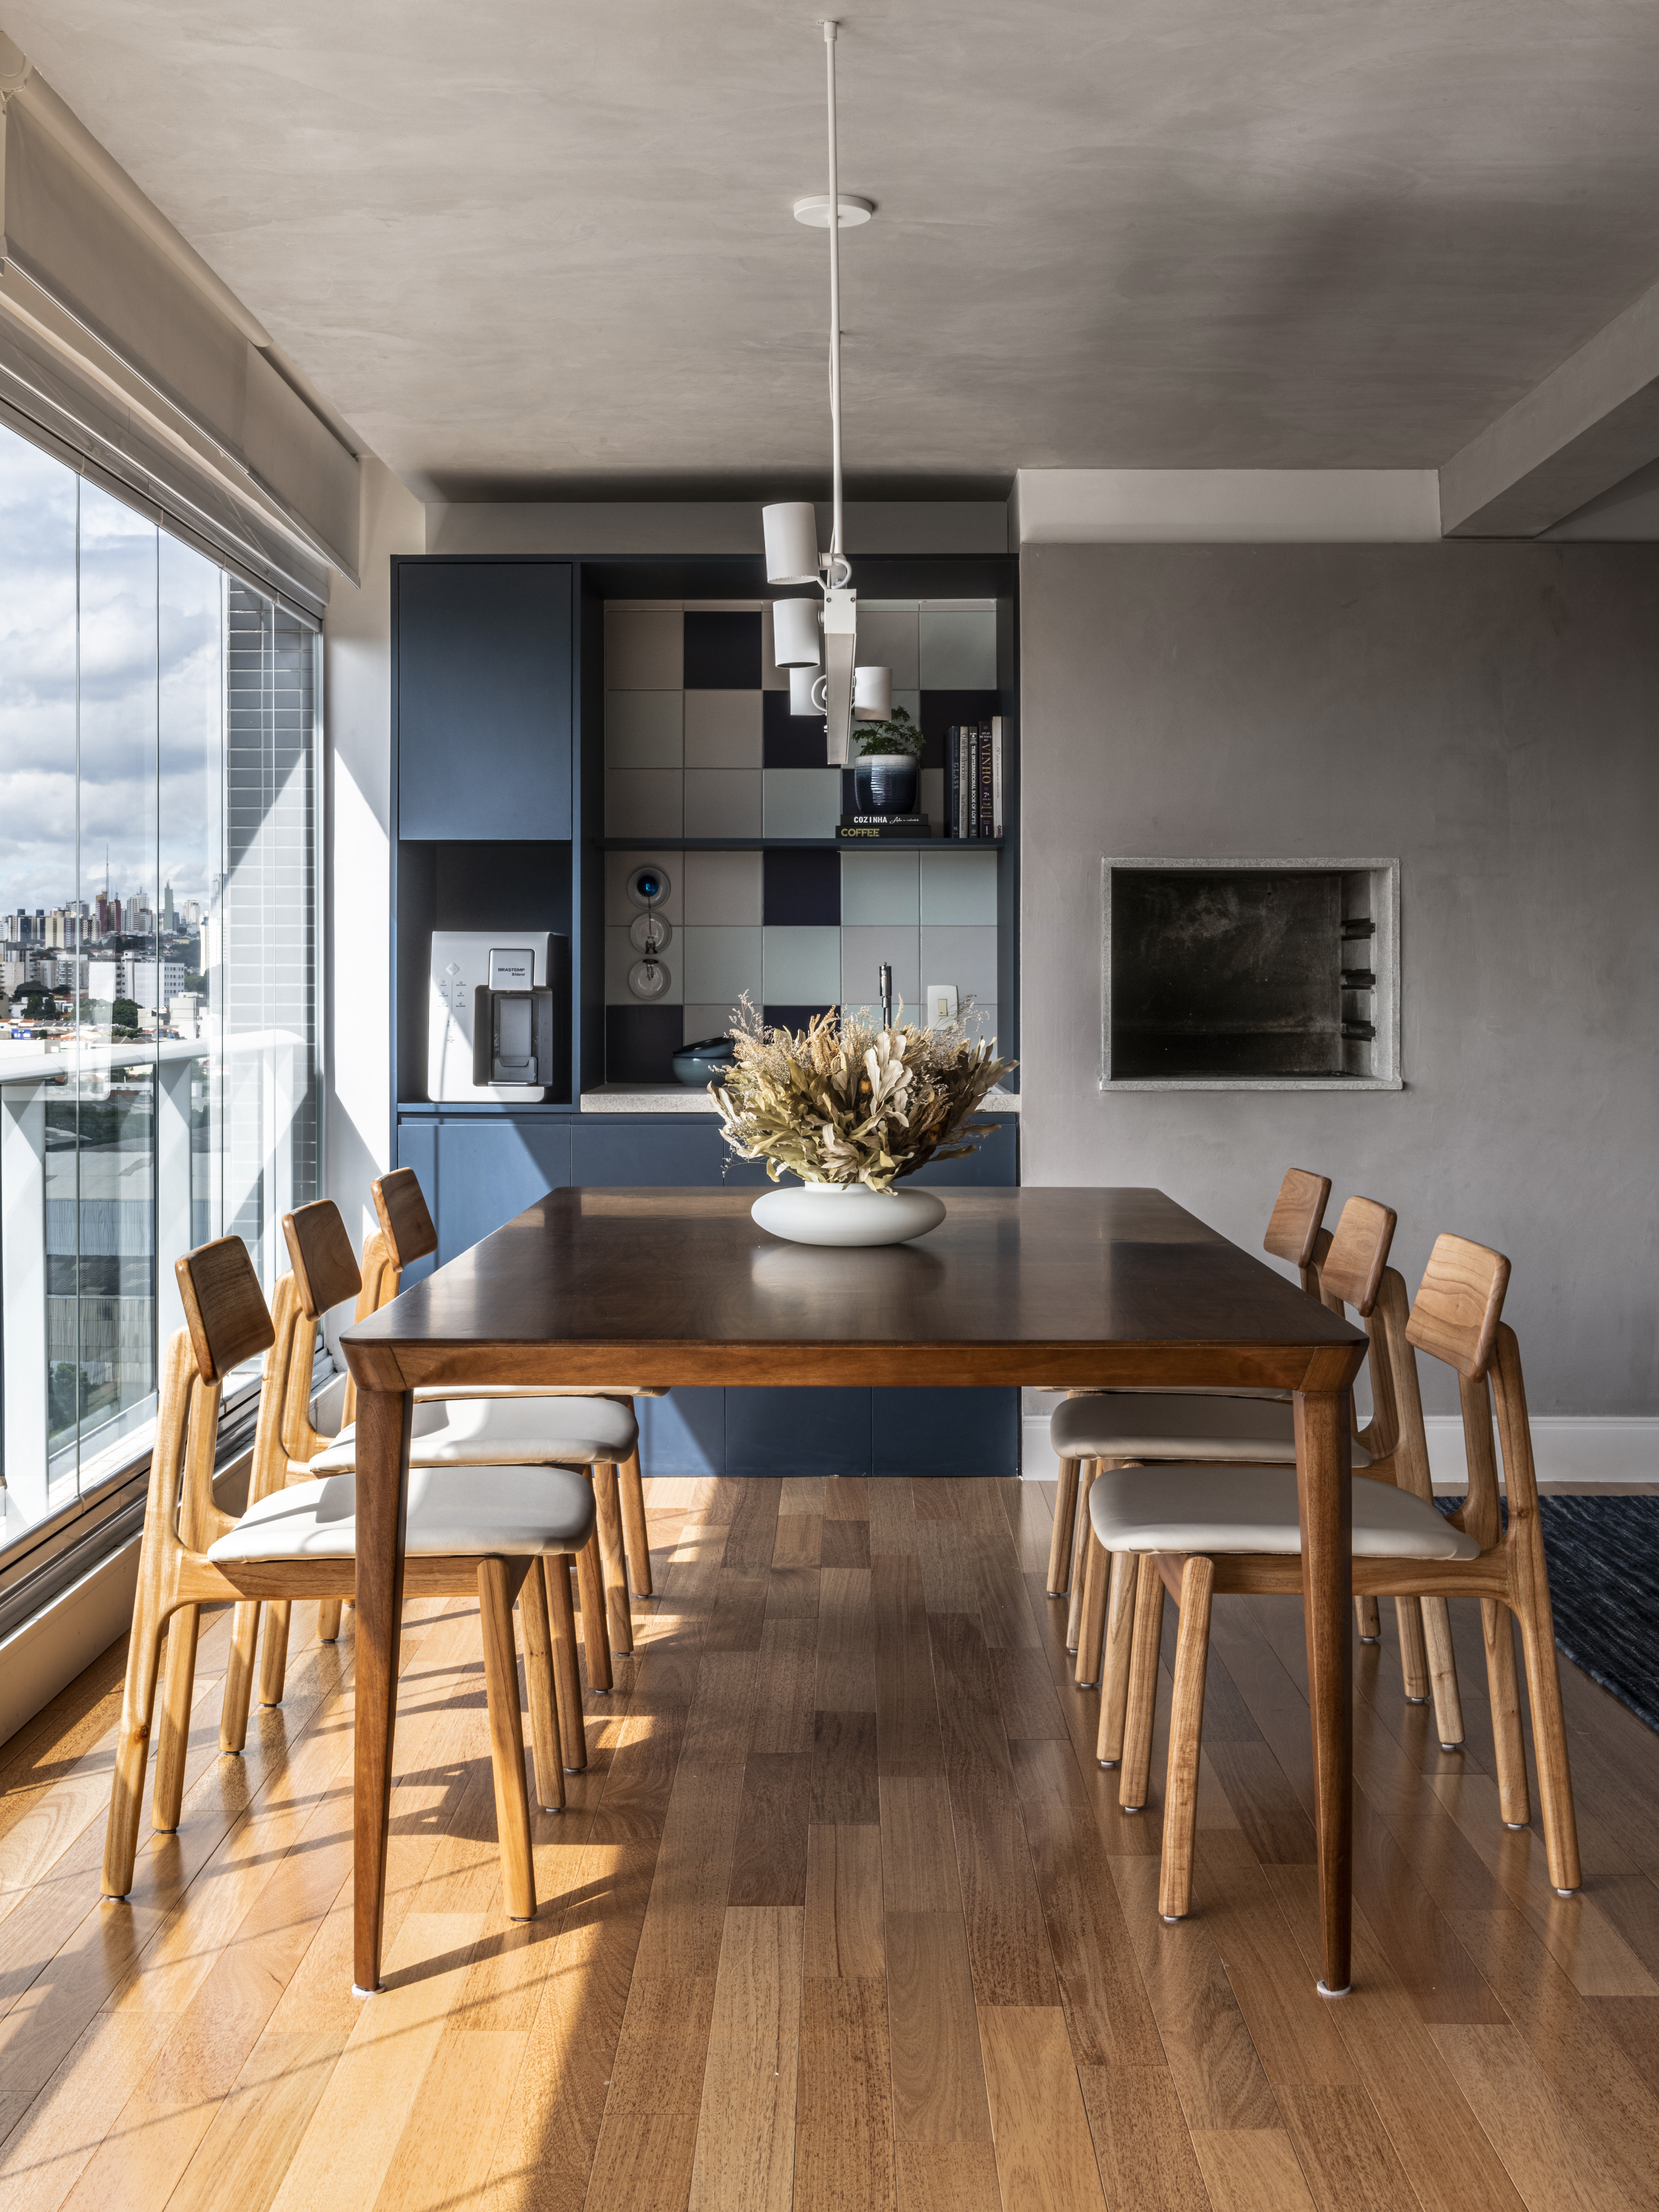 Apartamento de 130m² com projeto de M² Arquitetura. Na foto, varanda gourmet com mesa de madeira e churrasqueira.